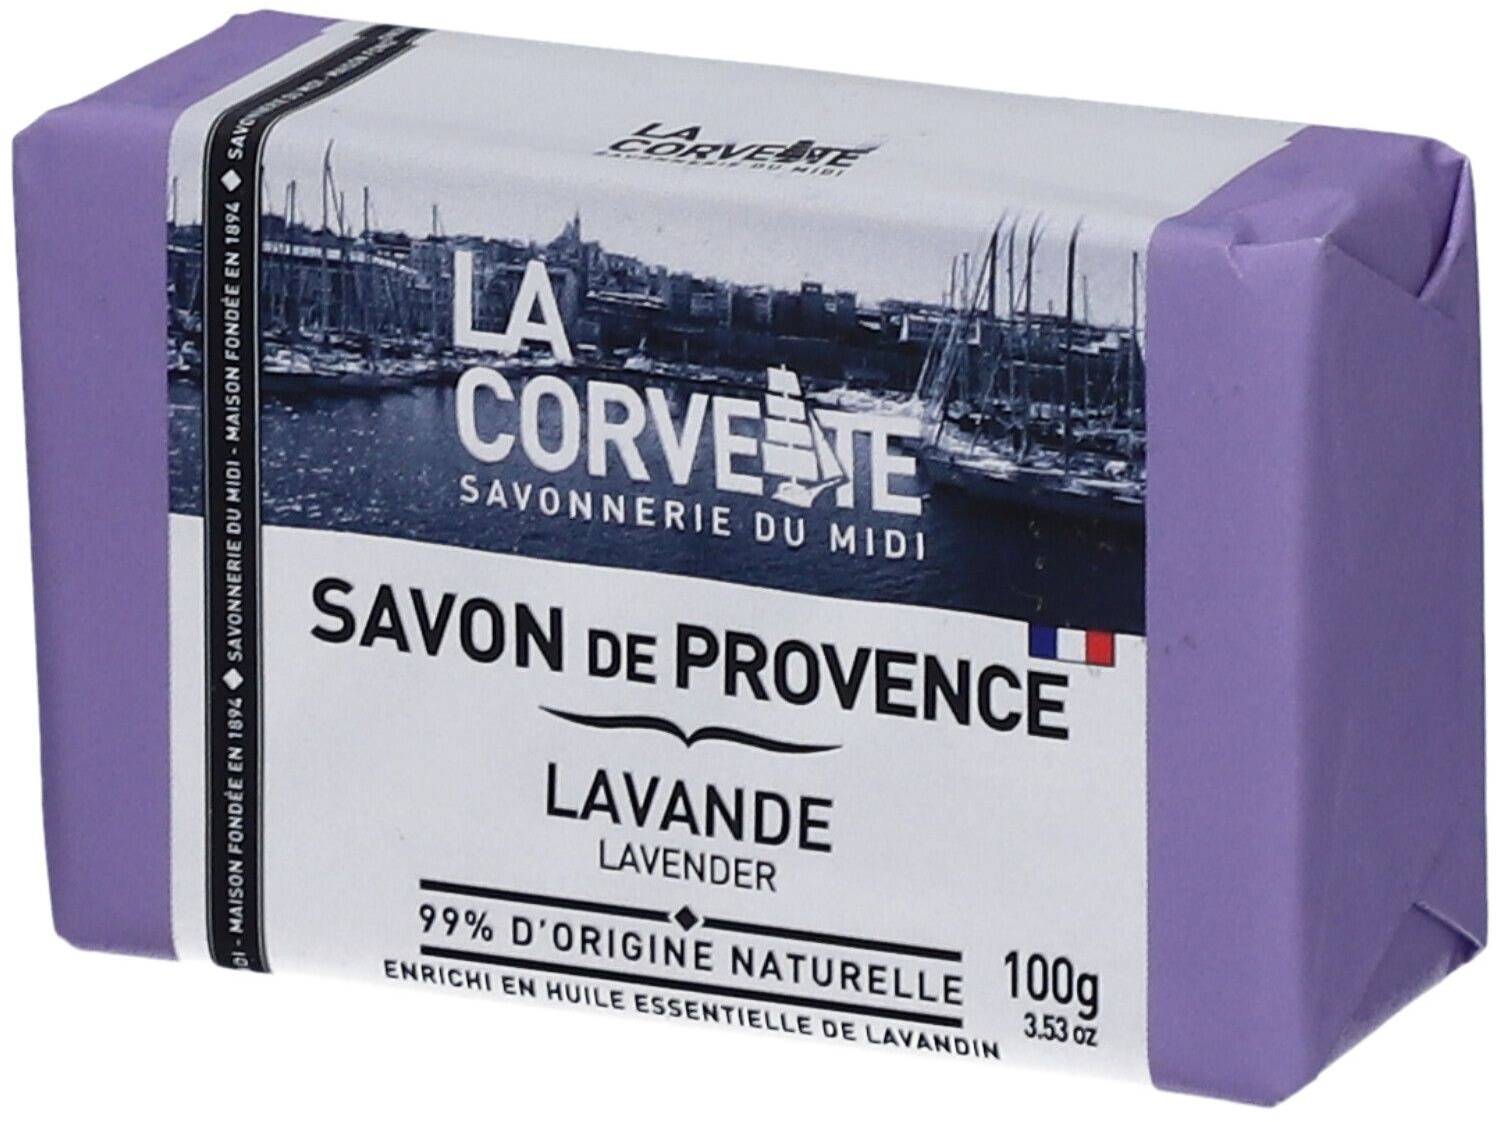 LA CORVETTE Savon de Provence Lavande 100 g savon